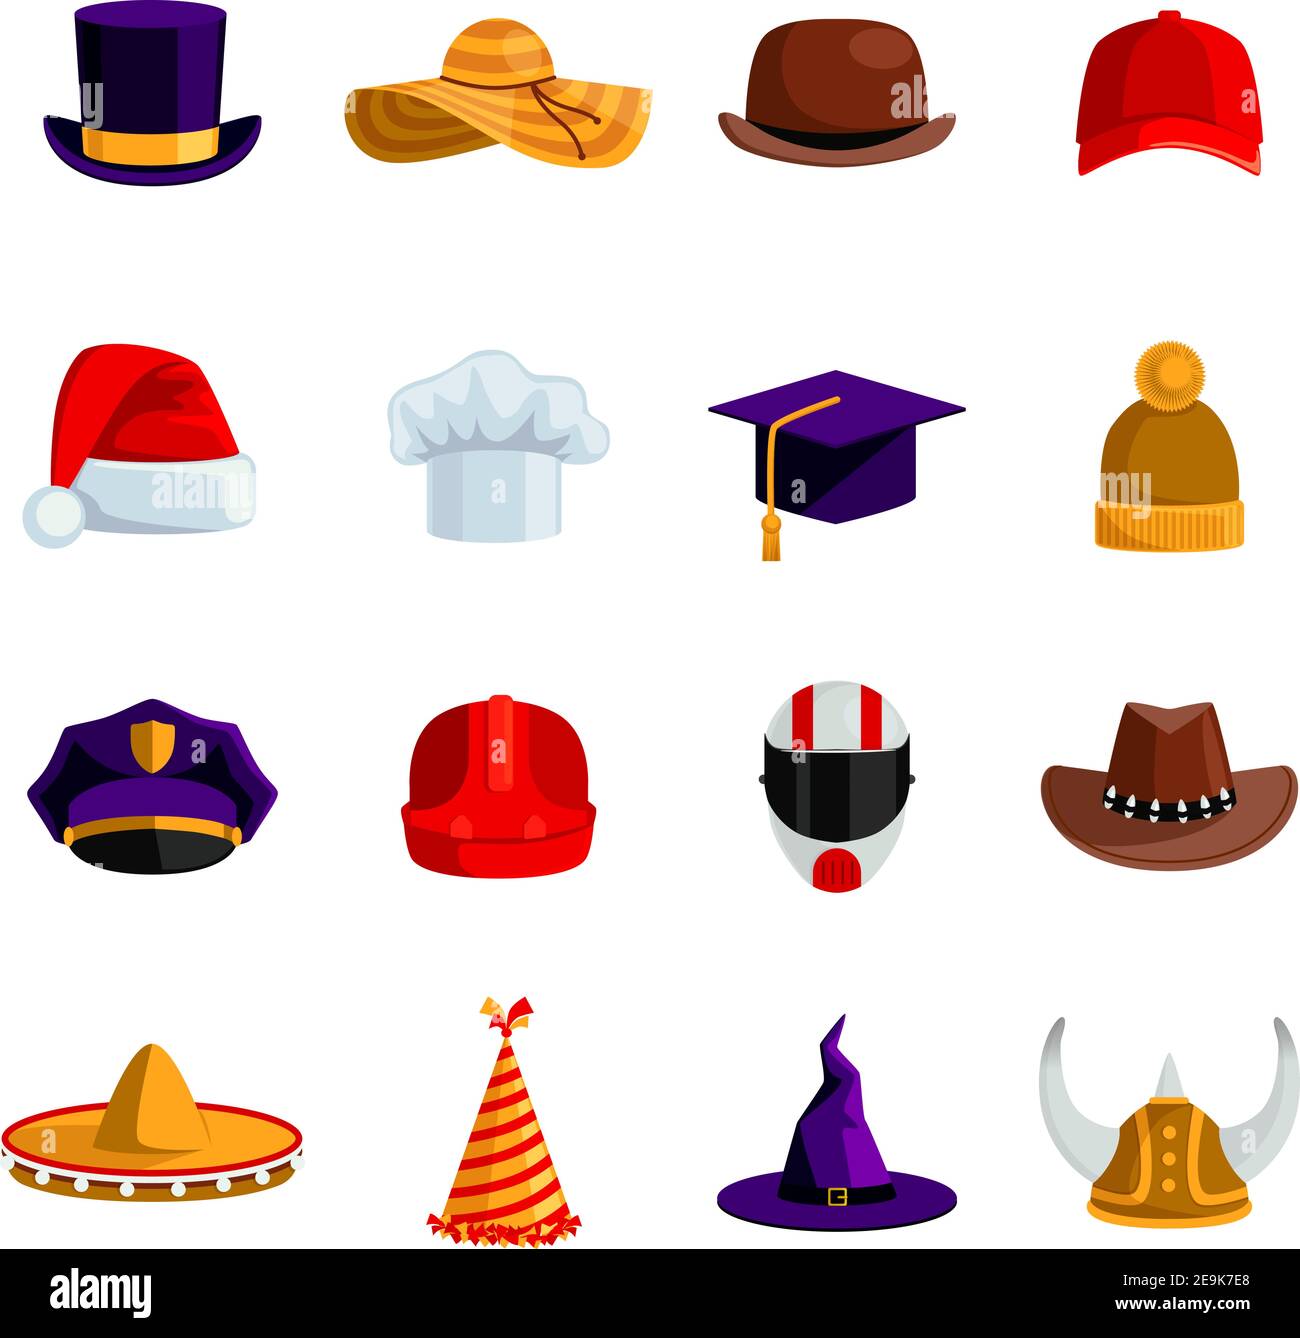 Chapeaux et casquettes jeu d'icônes de couleur plate de sombrero Bowler  chapeau universitaire carré casquette de base-ball chapeau paille santa  claus et clown caps vecteur isolé illustrati Image Vectorielle Stock - Alamy